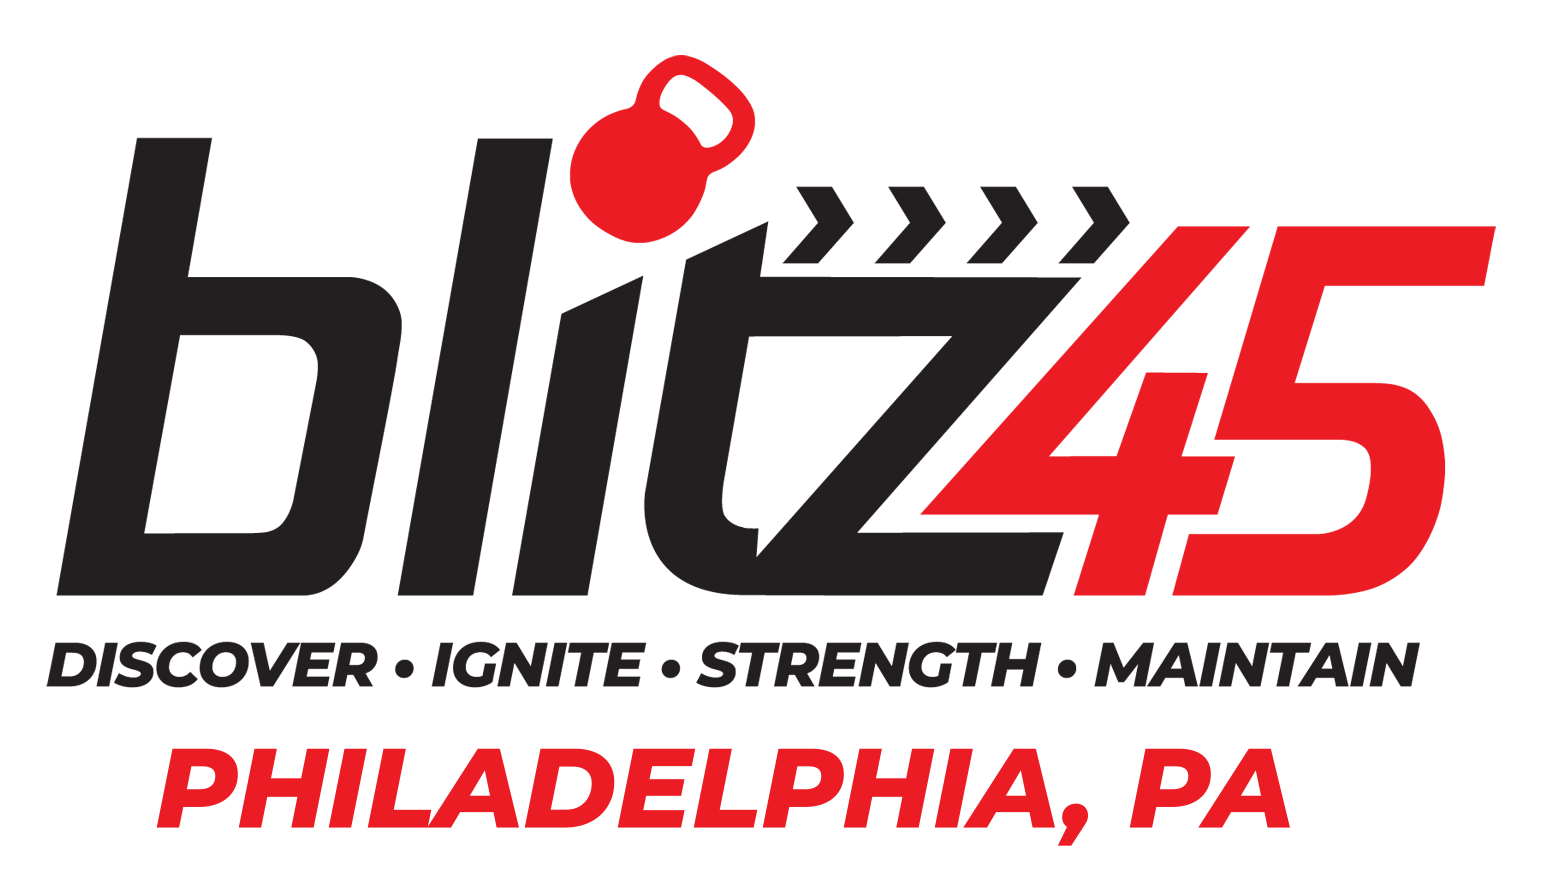 blitz45 Philadelphia